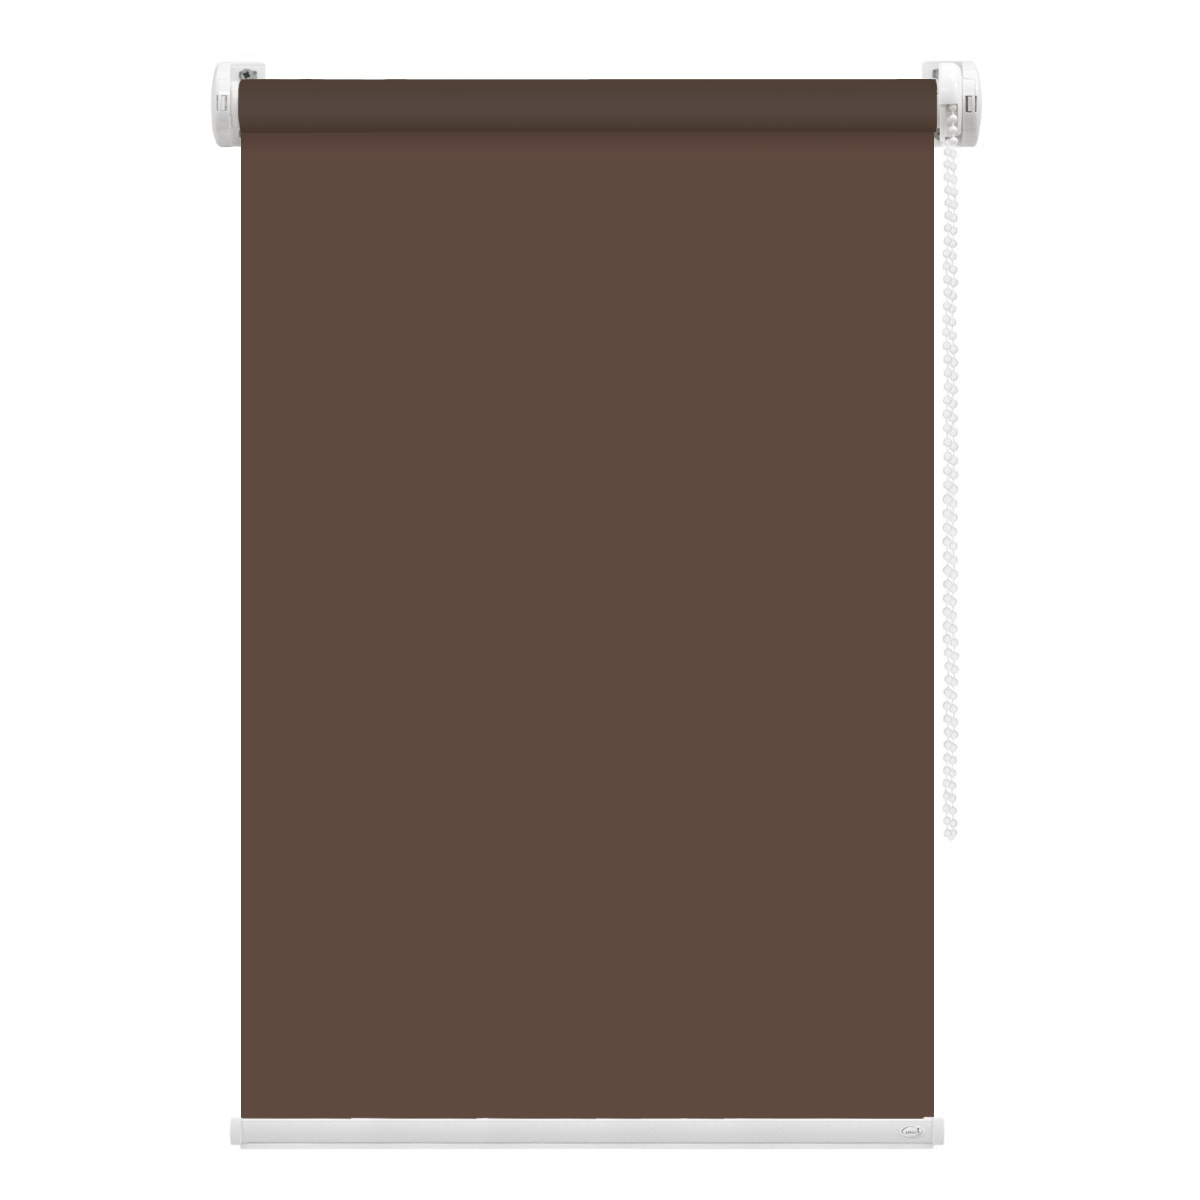 Рулонная штора FixLine Amigo Basic коричневая 60х160 см рулонная штора fixline amigo basic коричневая 50х160 см